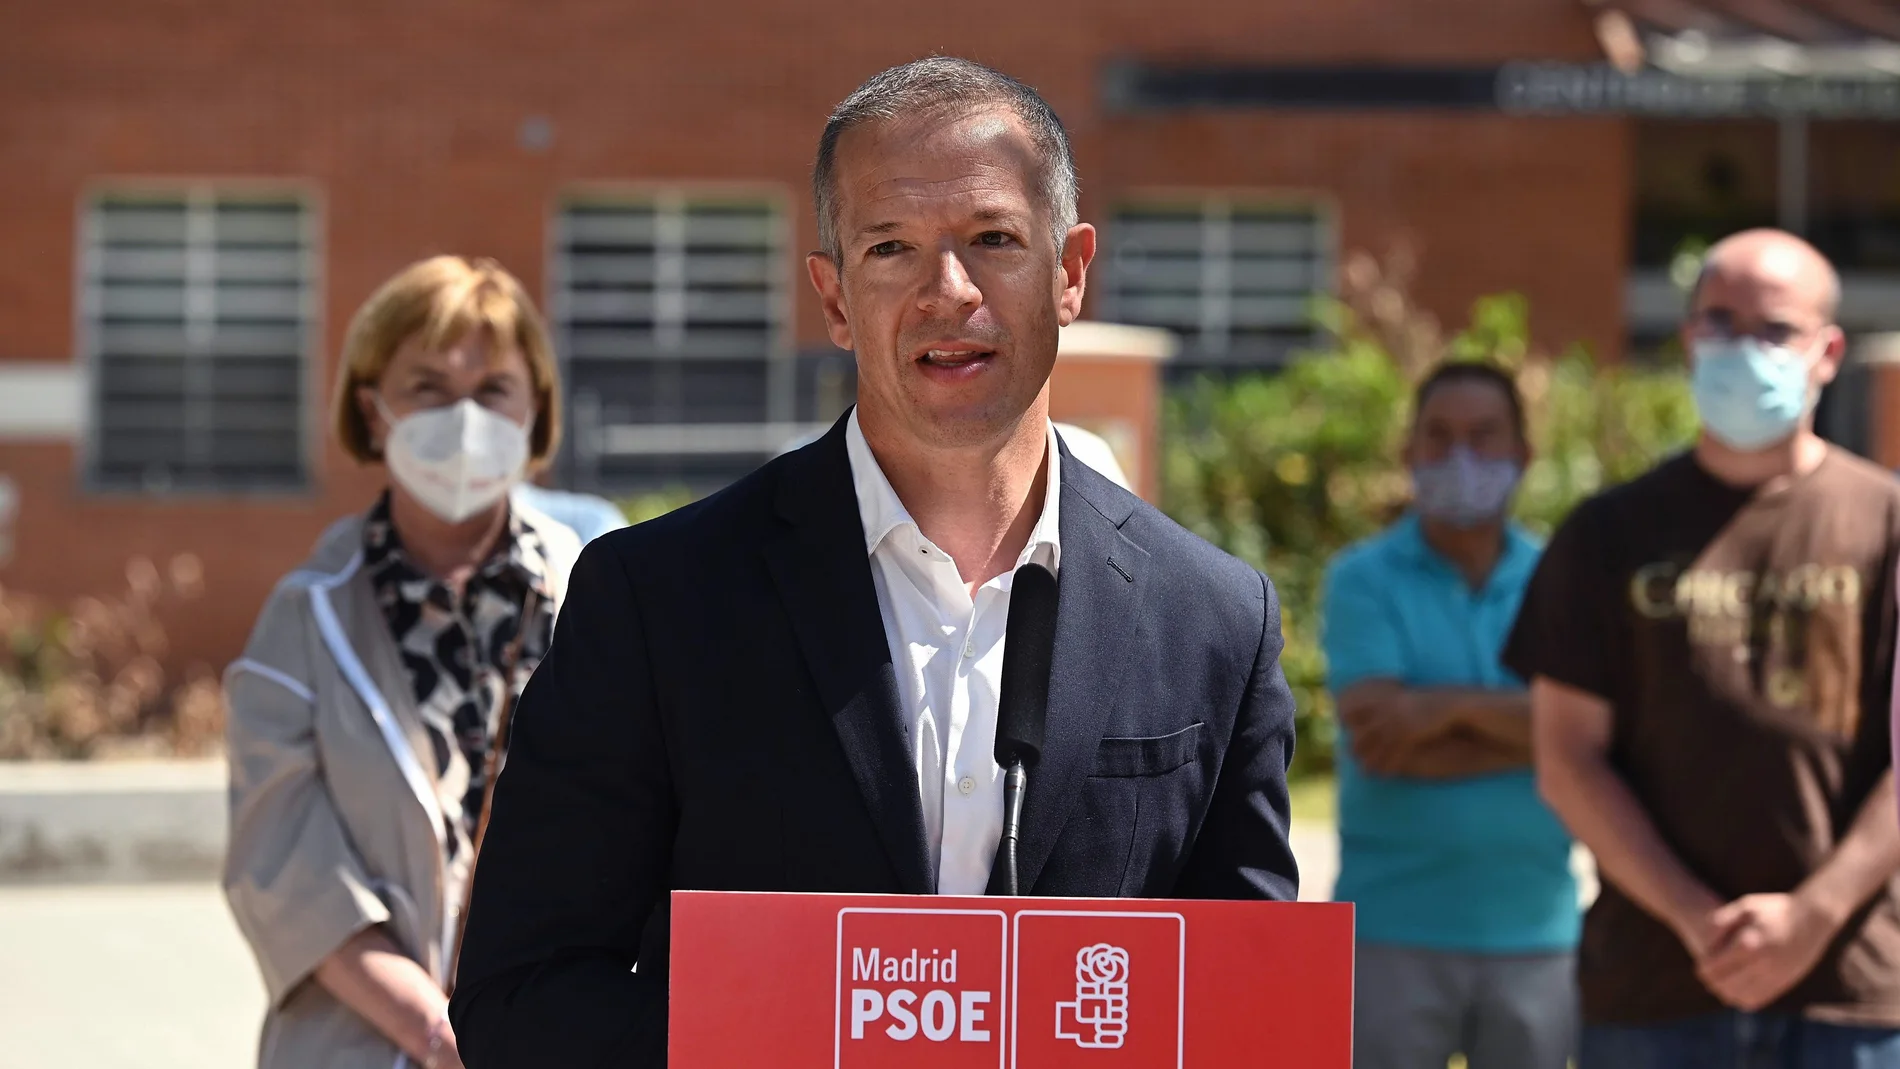 El portavoz del PSOE en el Senado, Ander Gil, será el nuevo presidente de la Cámara Alta